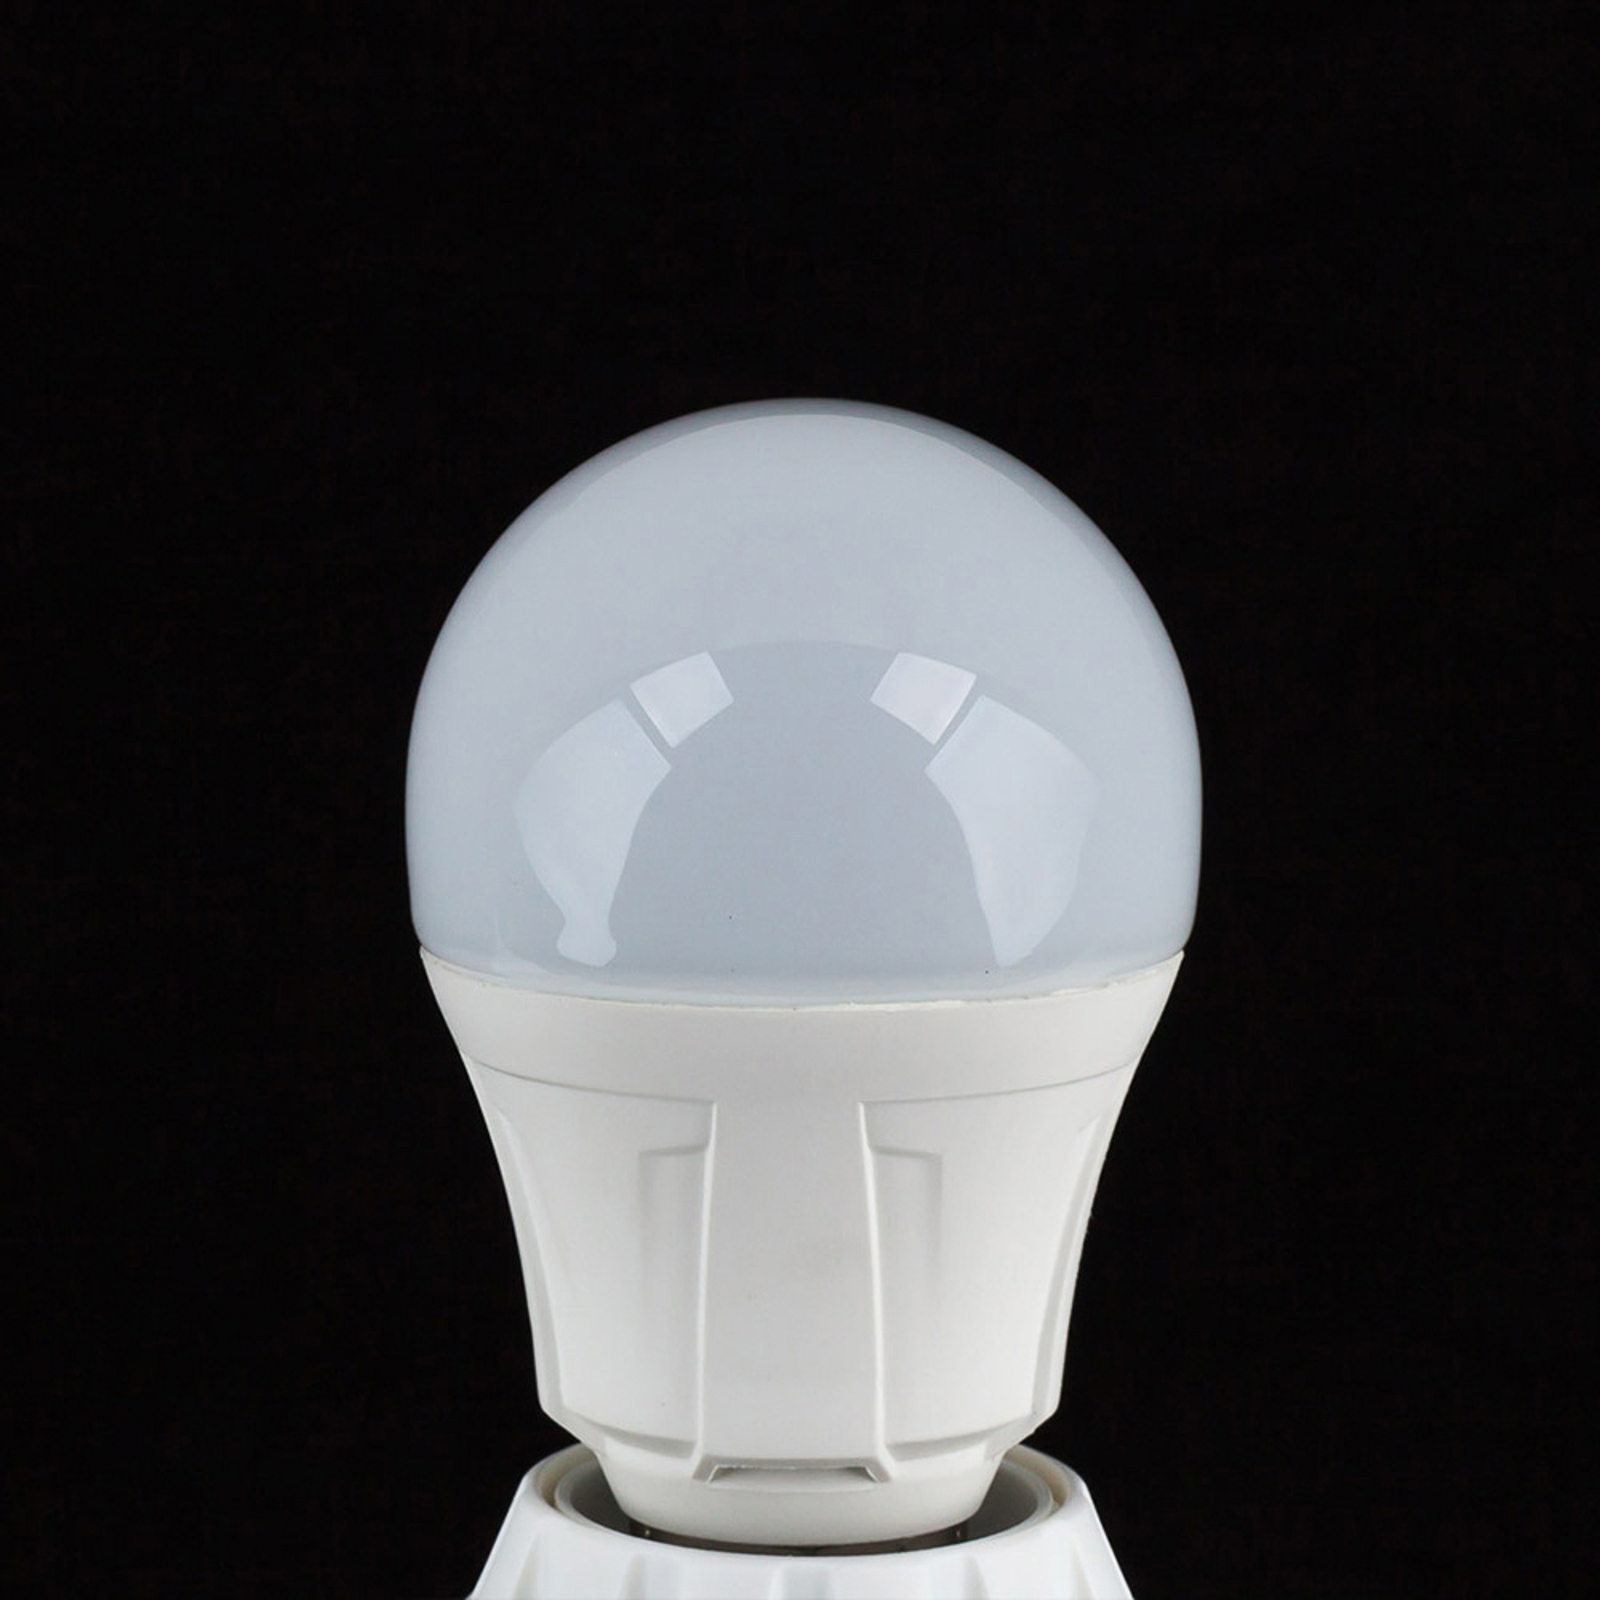 LED v tvare tradičnej žiarovky E27 11W 830 3 kusy